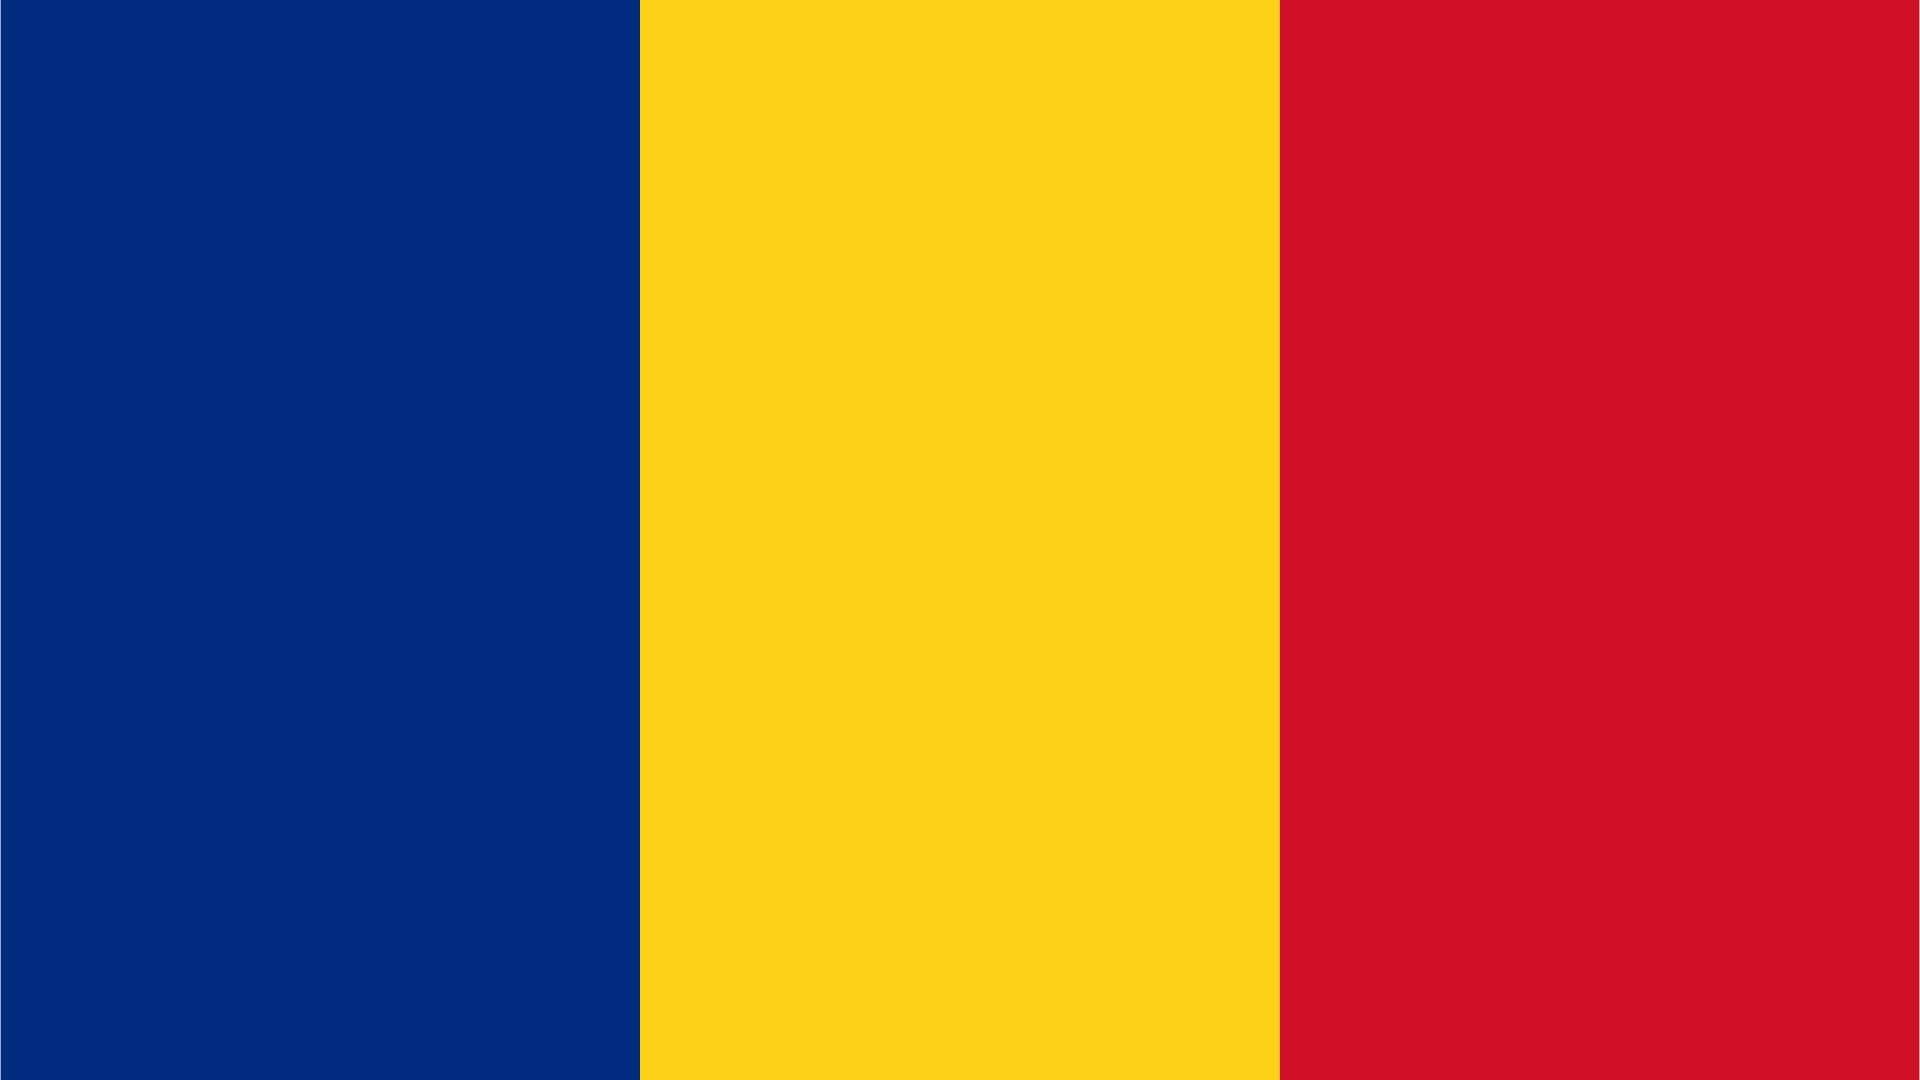 Marknadsundersökningspanel i Rumänien